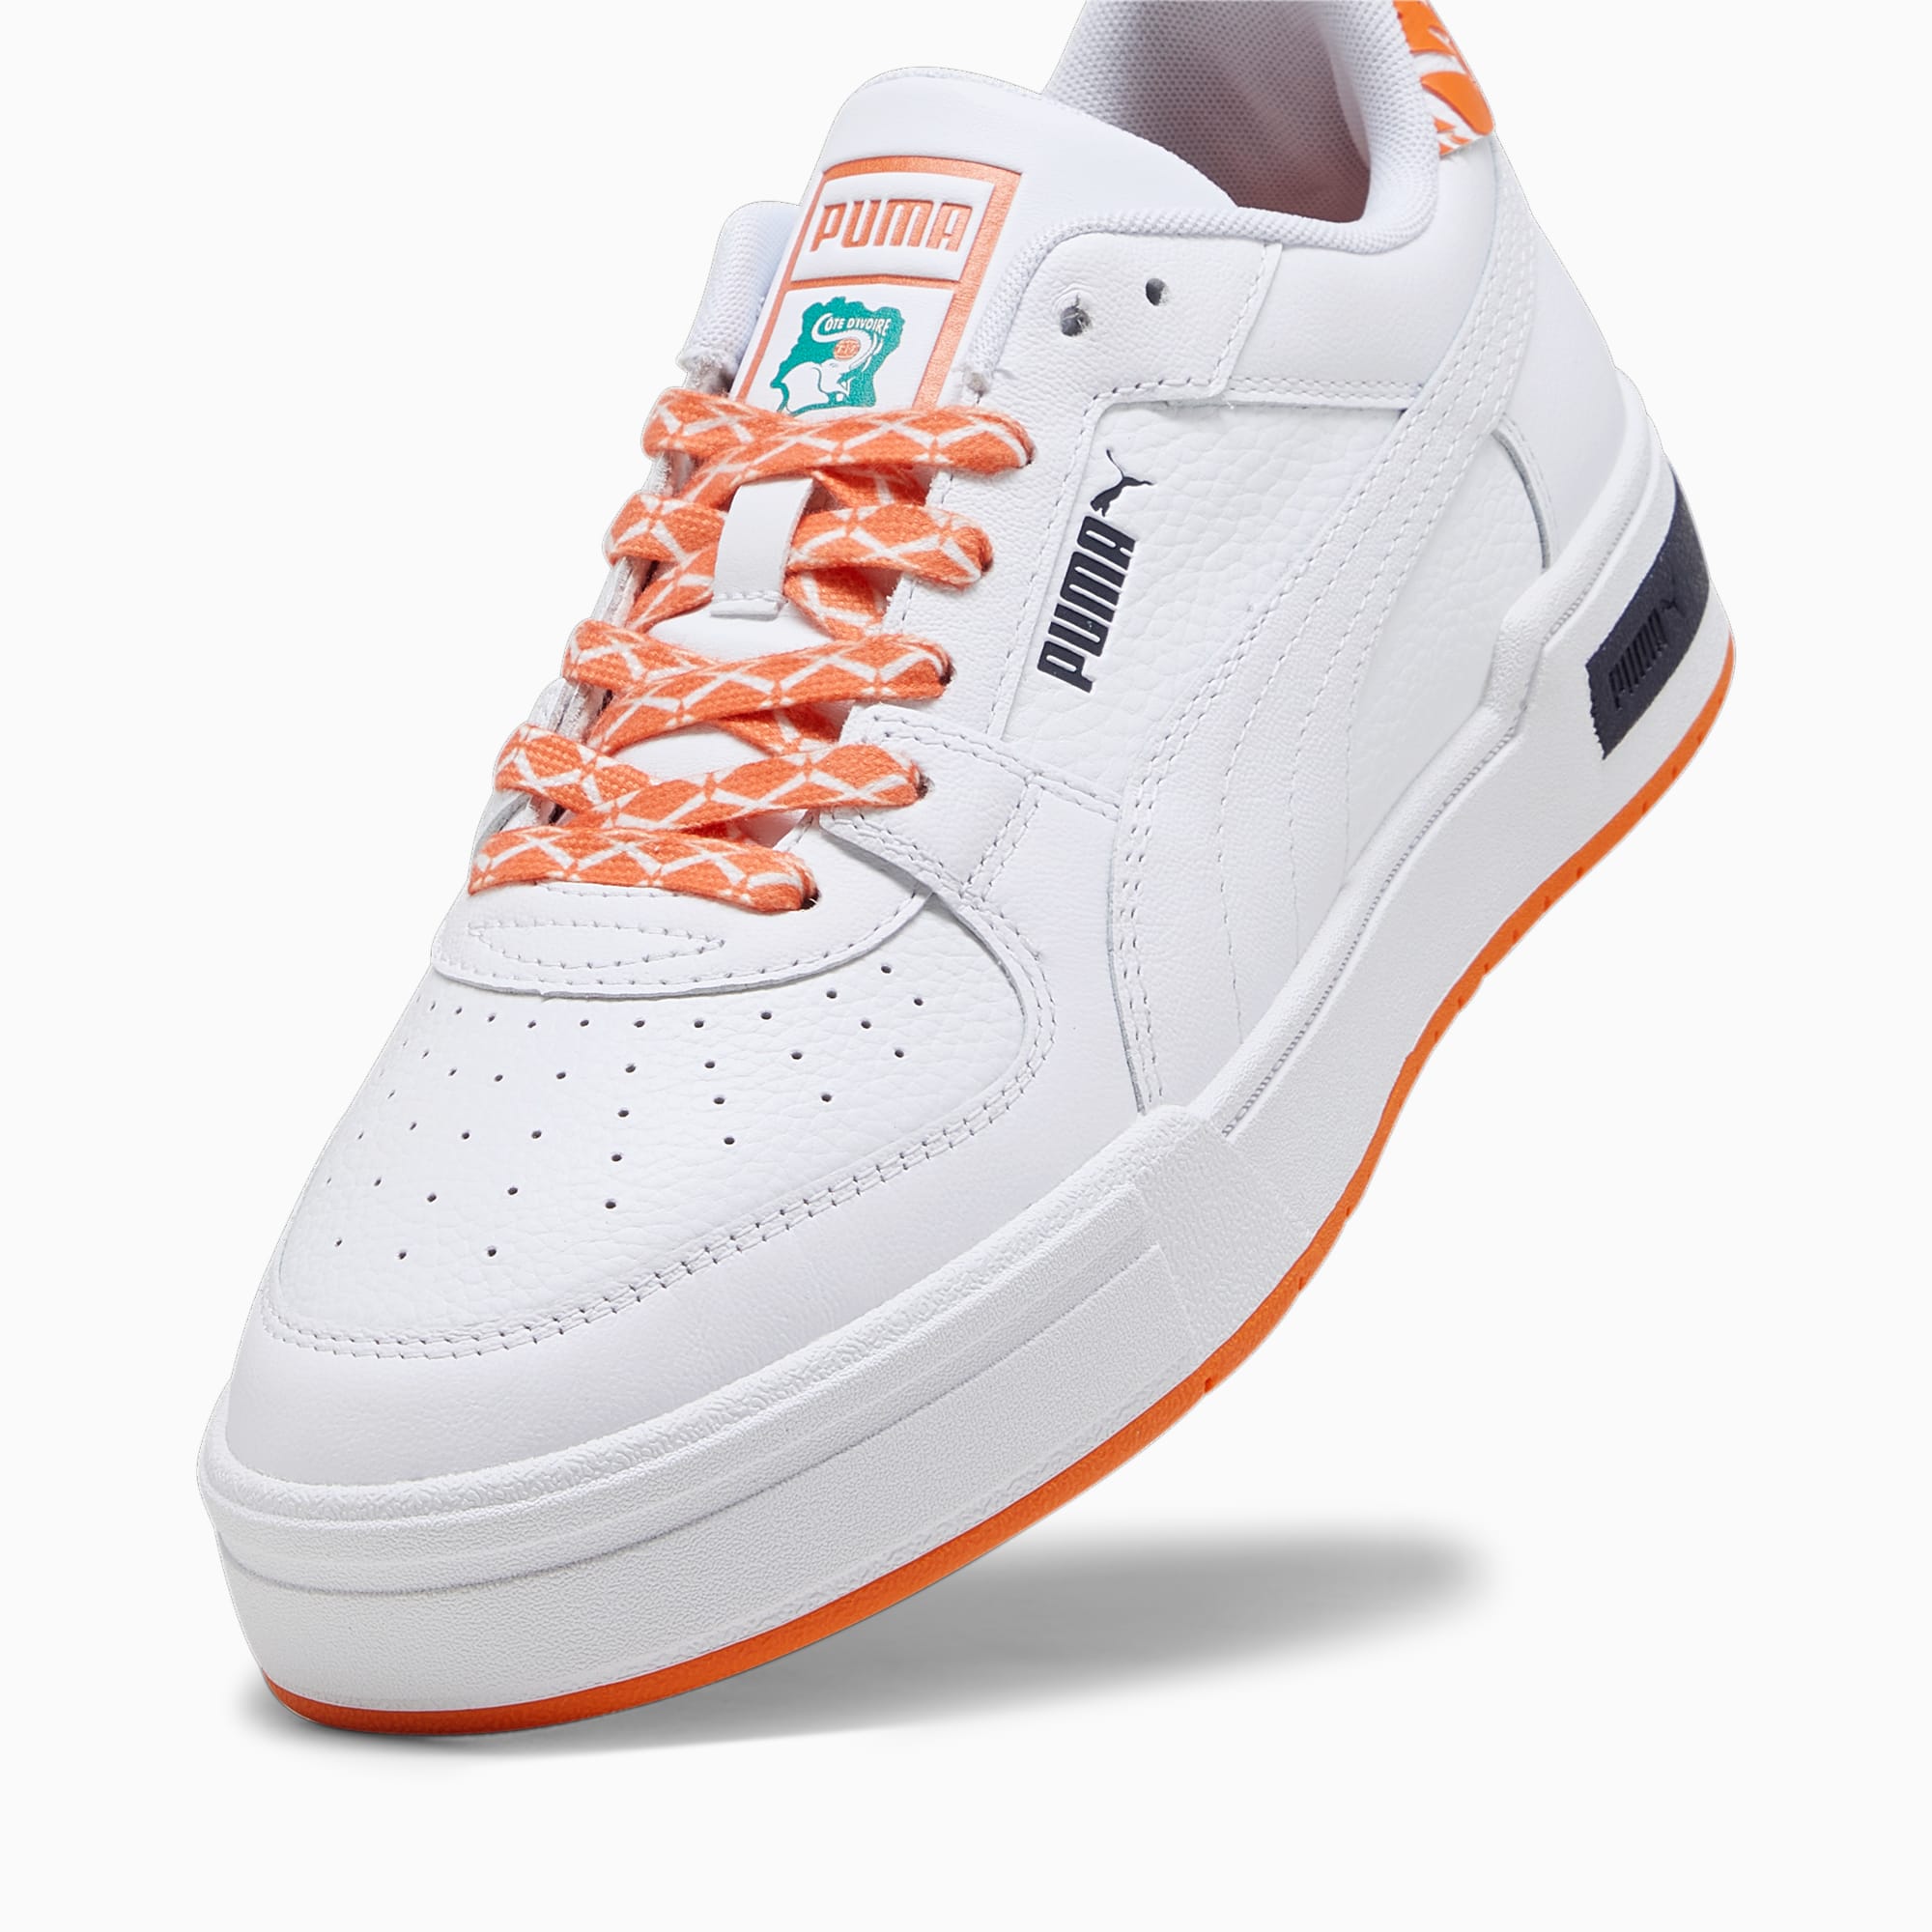 PUMA Chaussure Sneakers De Football CA Pro Côte D’Ivoire Pour Homme, Blanc/Orange